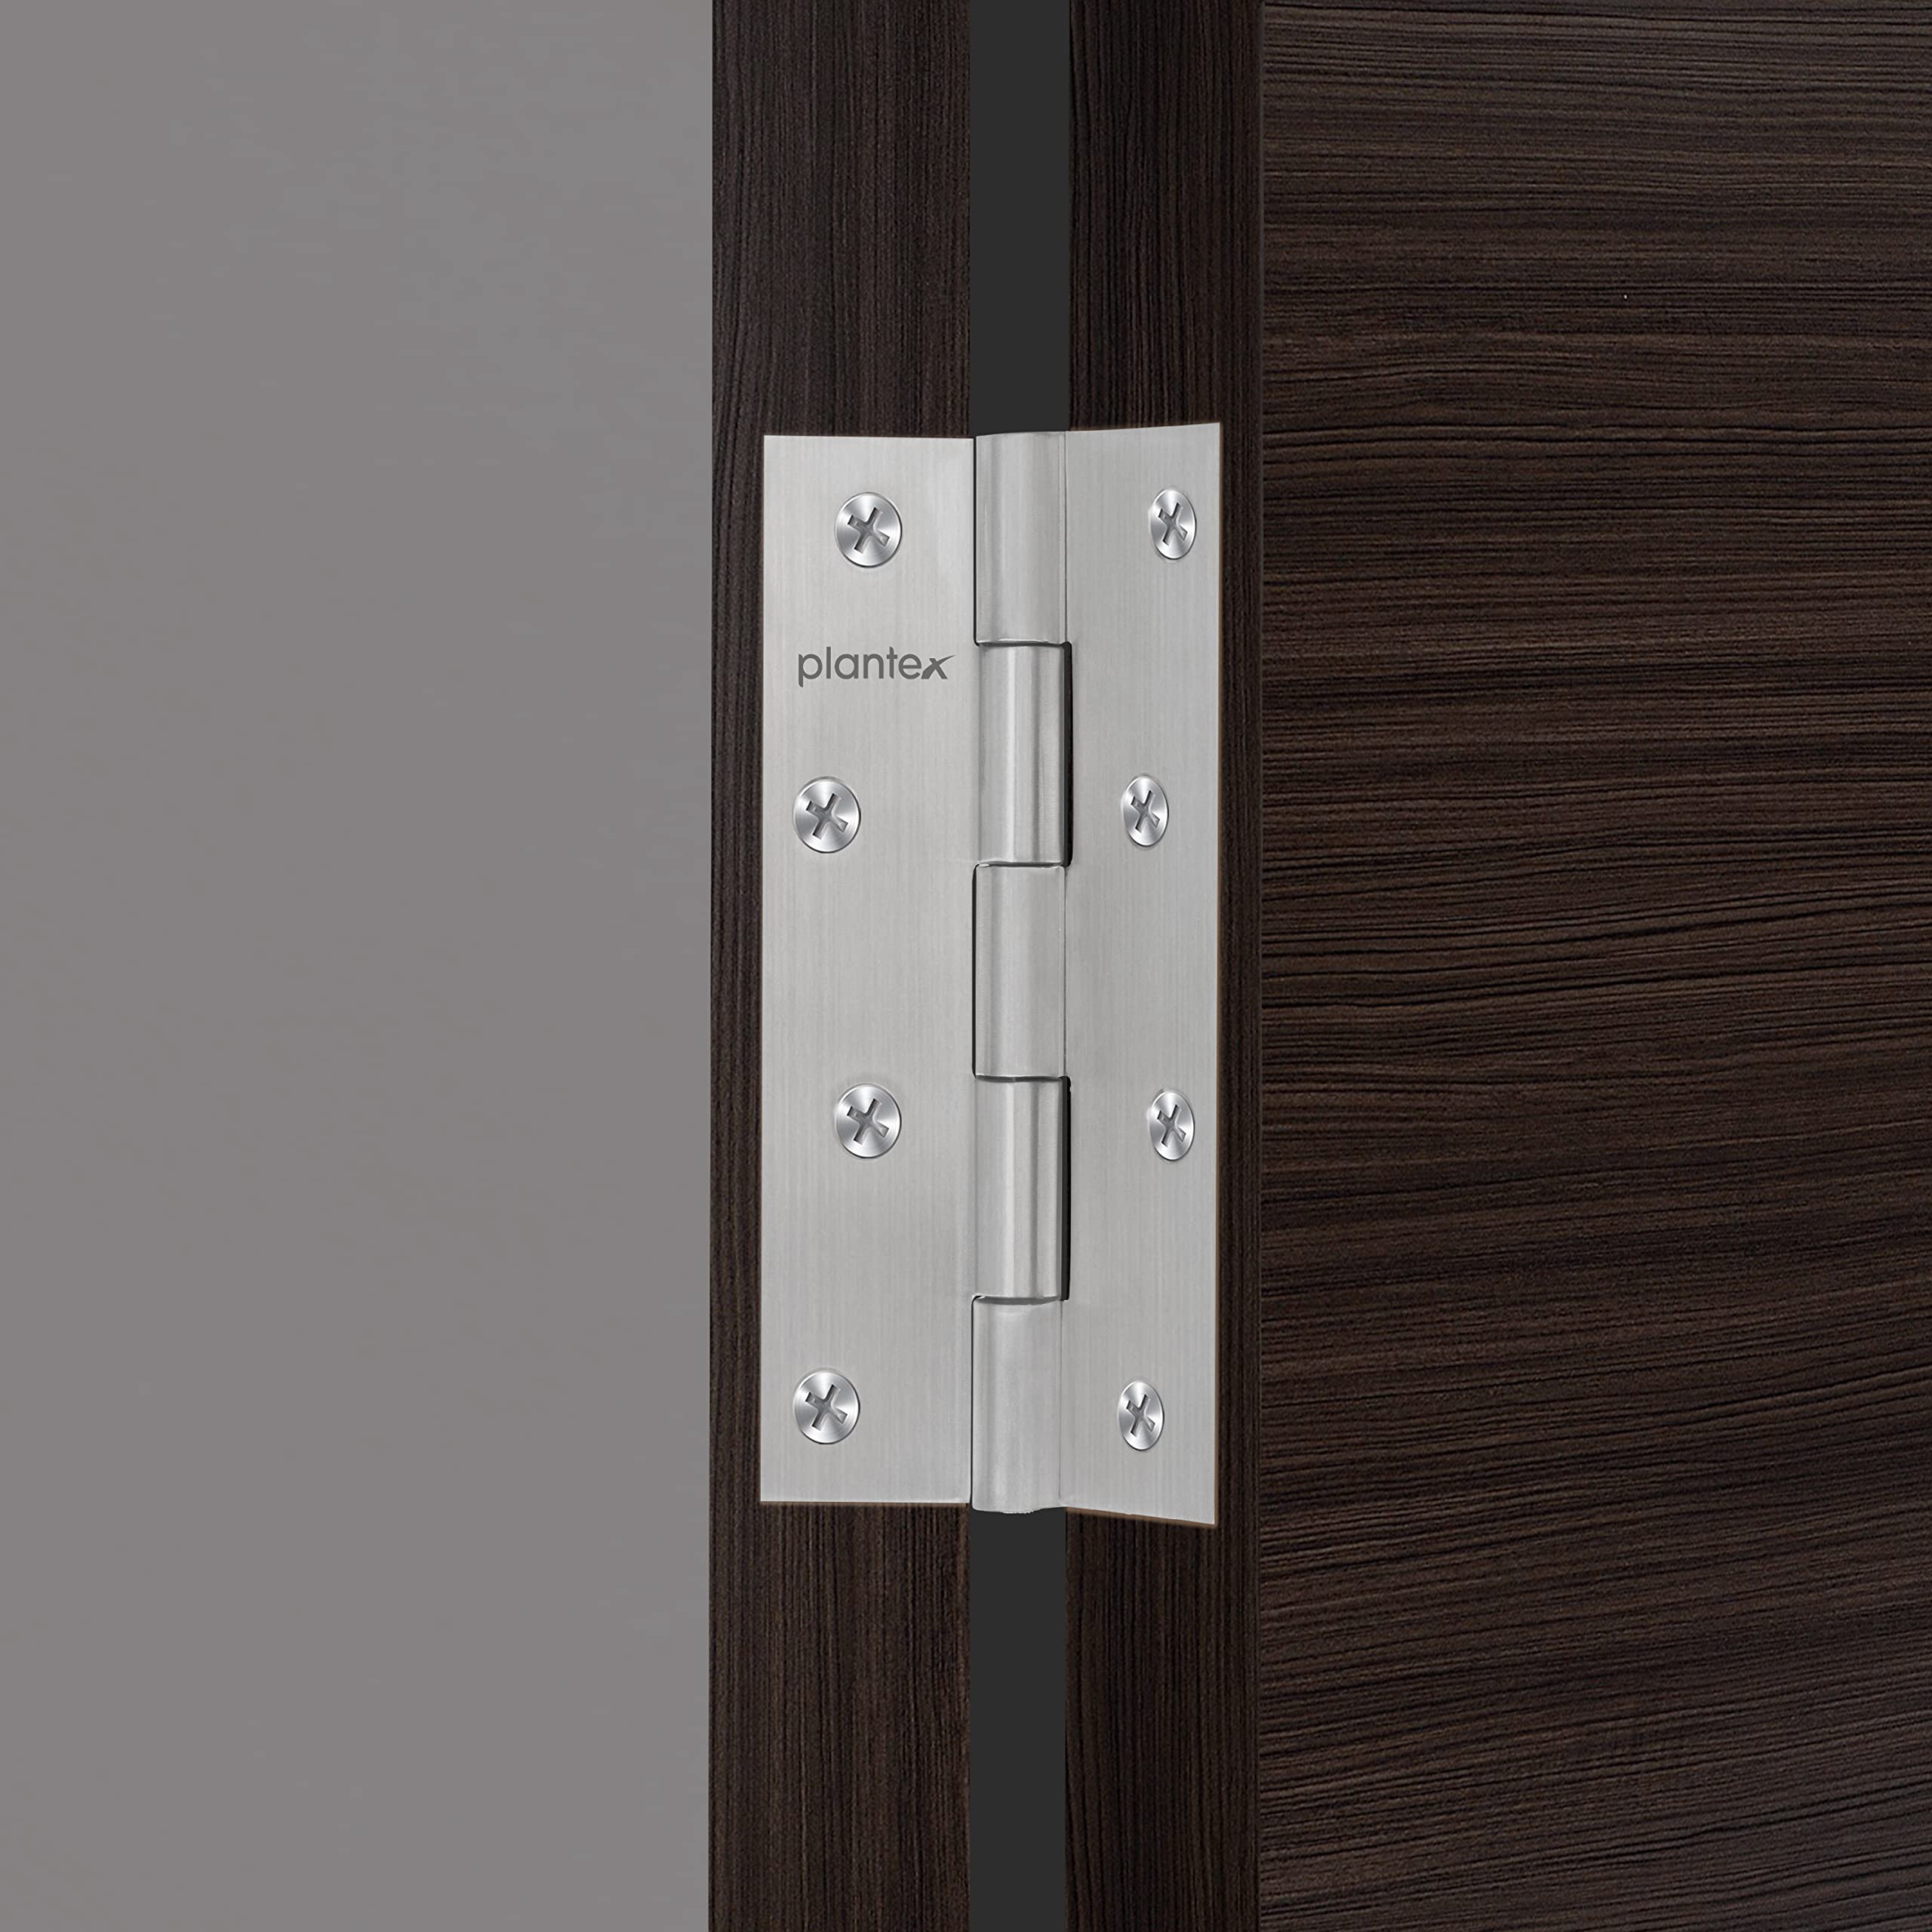 Plantex Heavy Duty Stainless Steel Door Butt Hinges 5 inch x 12 Gauge/2.5 mm Thickness Home/Office/Hotel for Main Door/Bedroom/Kitchen/Bathroom - Pack of 12 (Satin Matt)